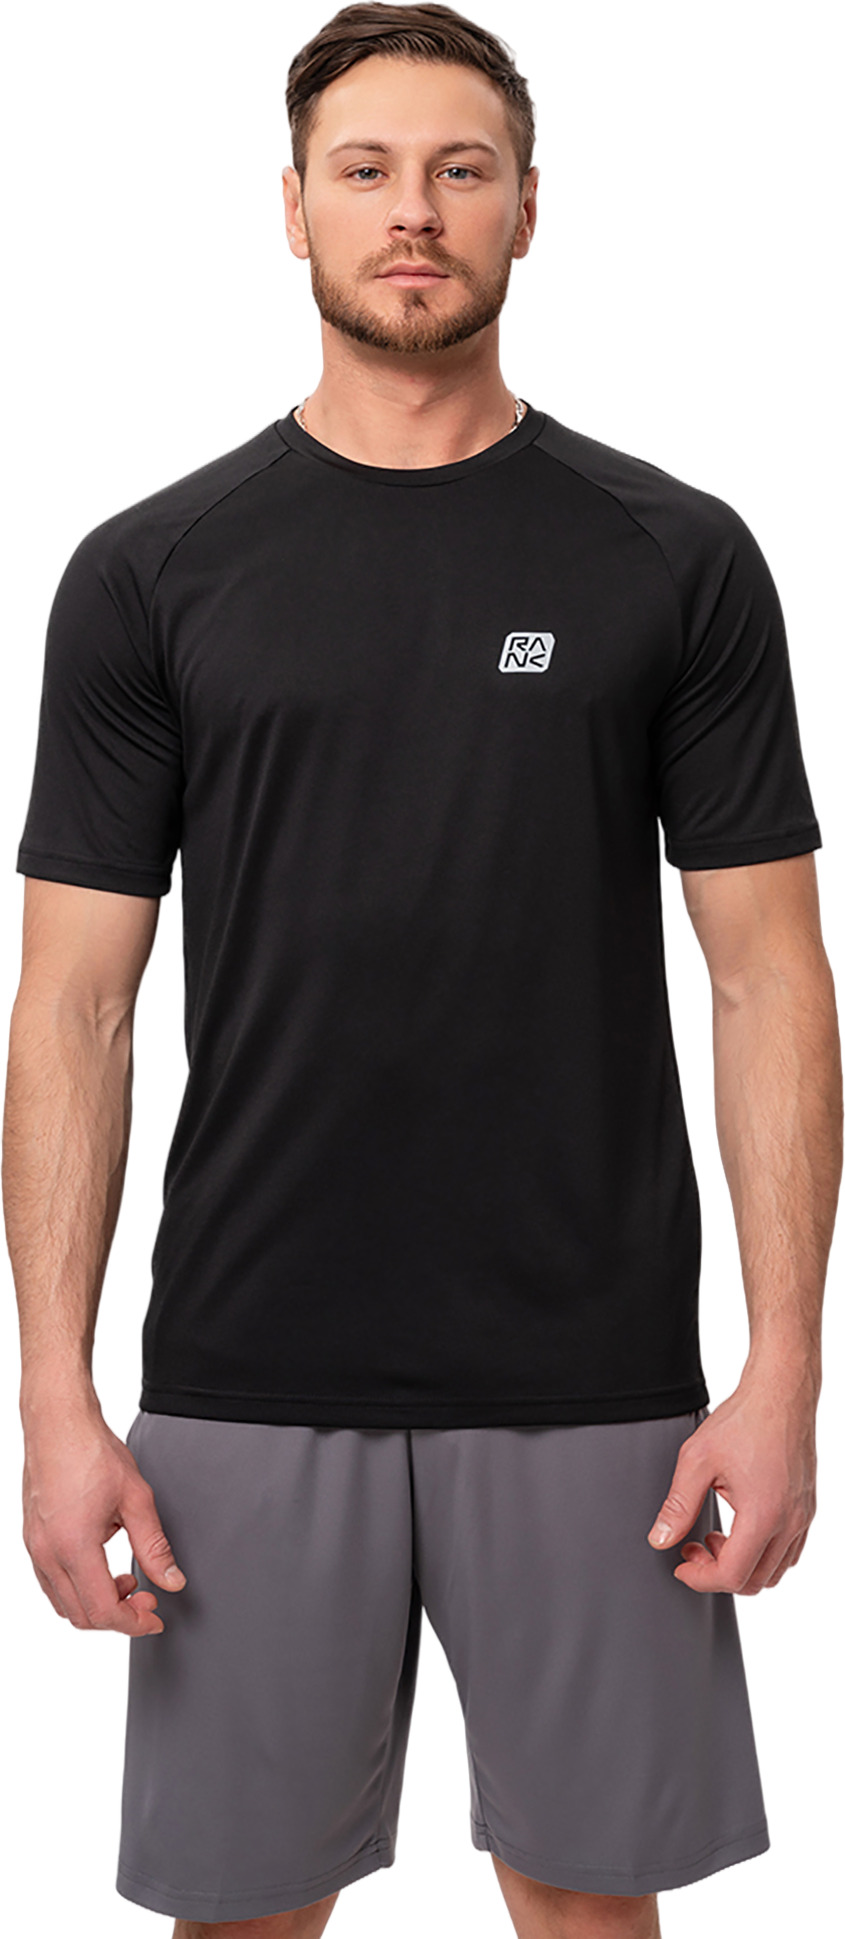 Футболка мужская RANK Train T-shirt черная XS